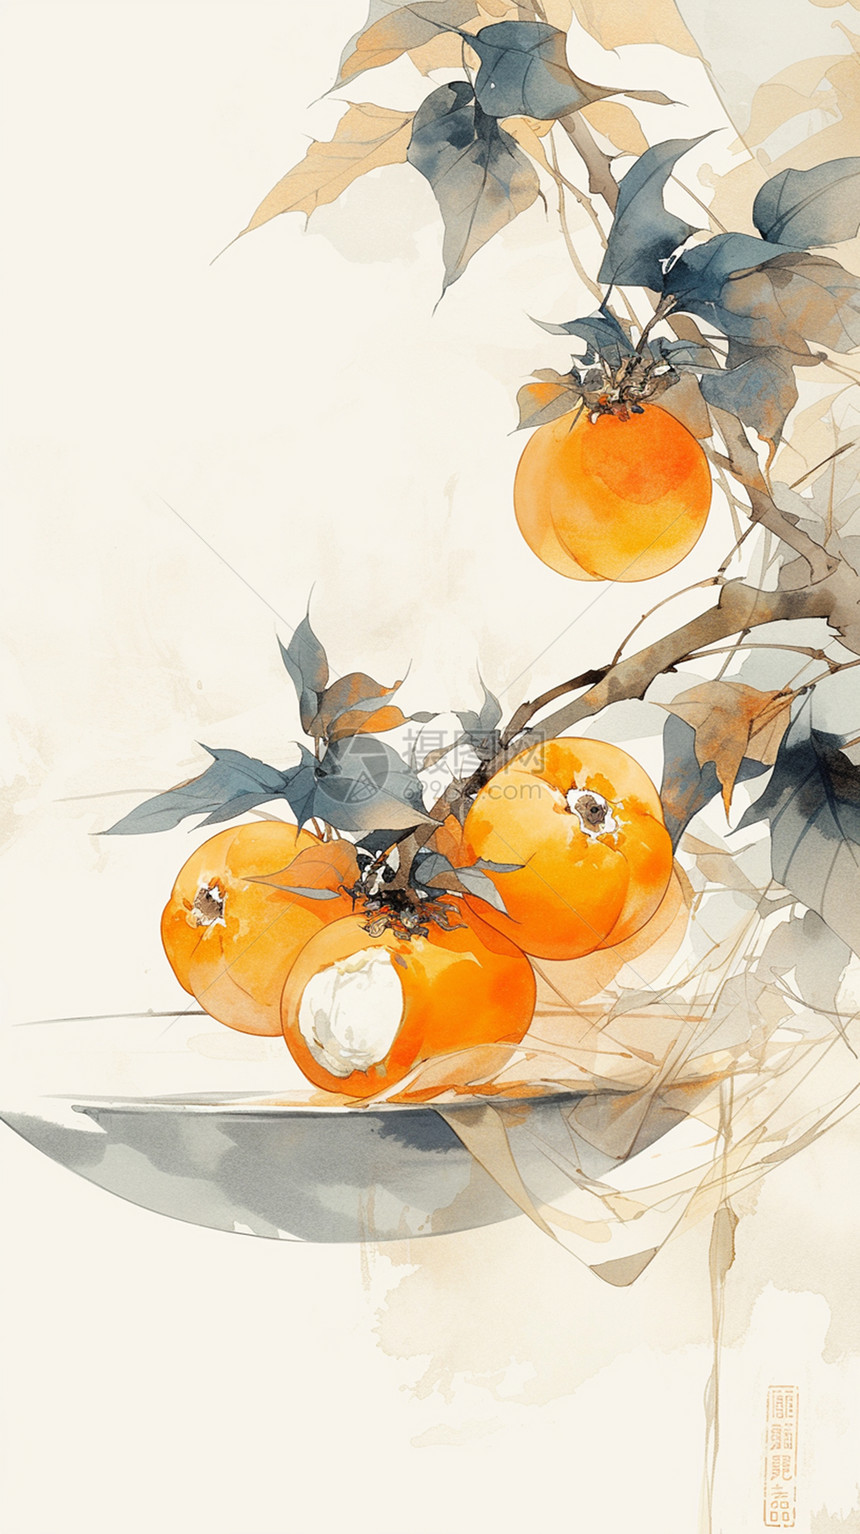 很多美味诱人的橙色果实挂在树上图片